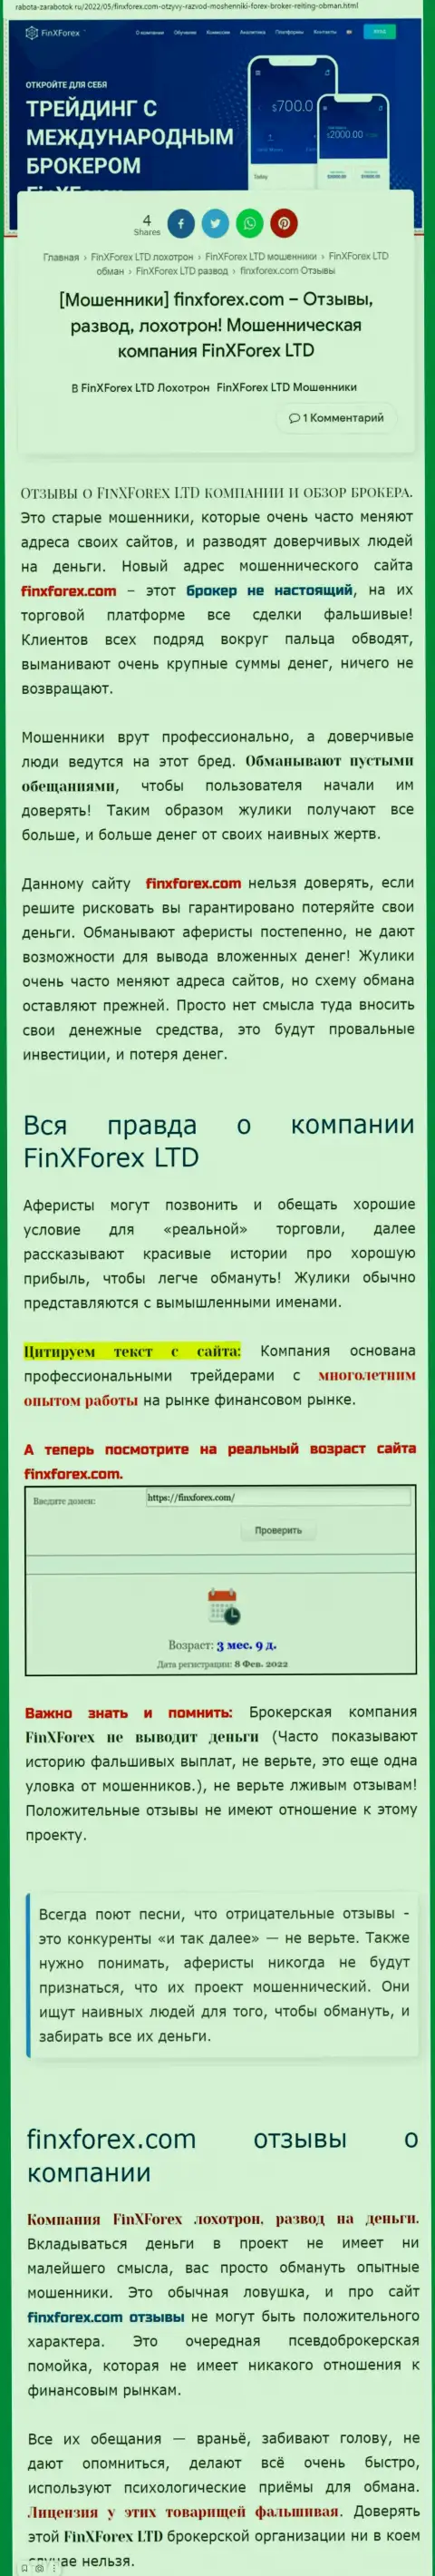 Автор публикации о FinXForex предупреждает, что в организации Фин Х Форекс мошенничают